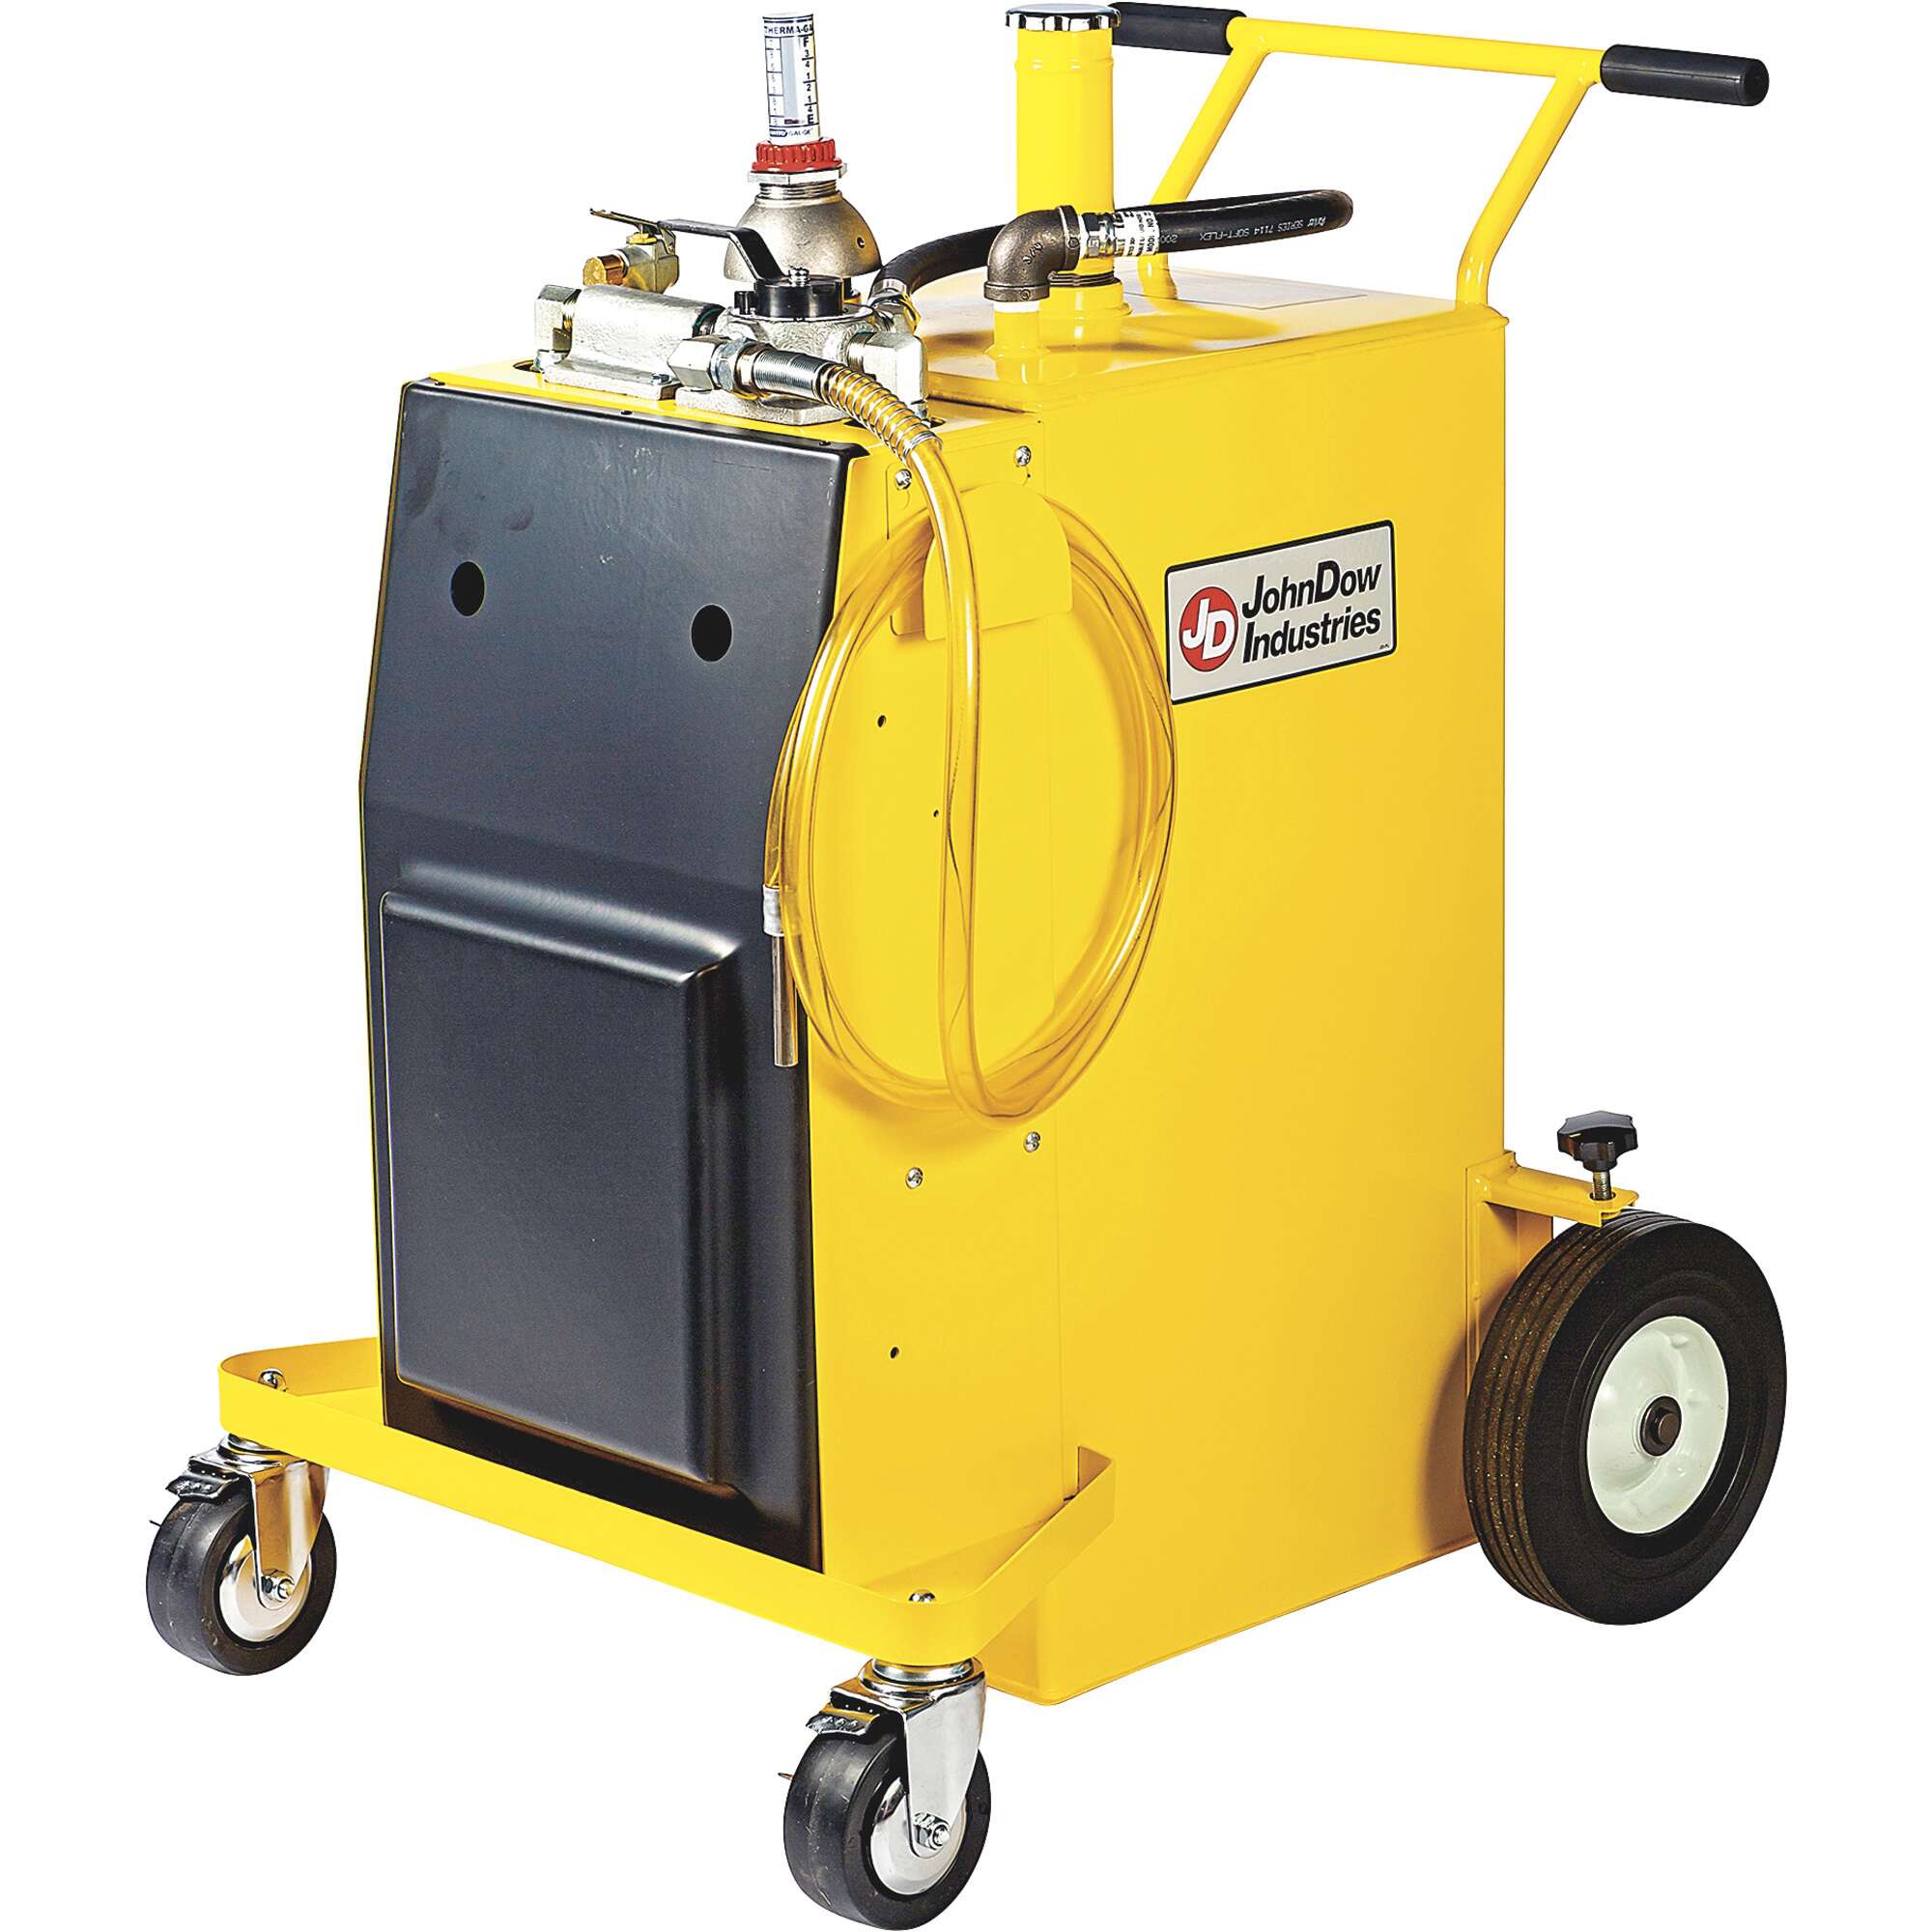 JohnDow Industries Diesel Fuel Caddy with Air Operated Pump 30Gal Capacity Steel Yellow